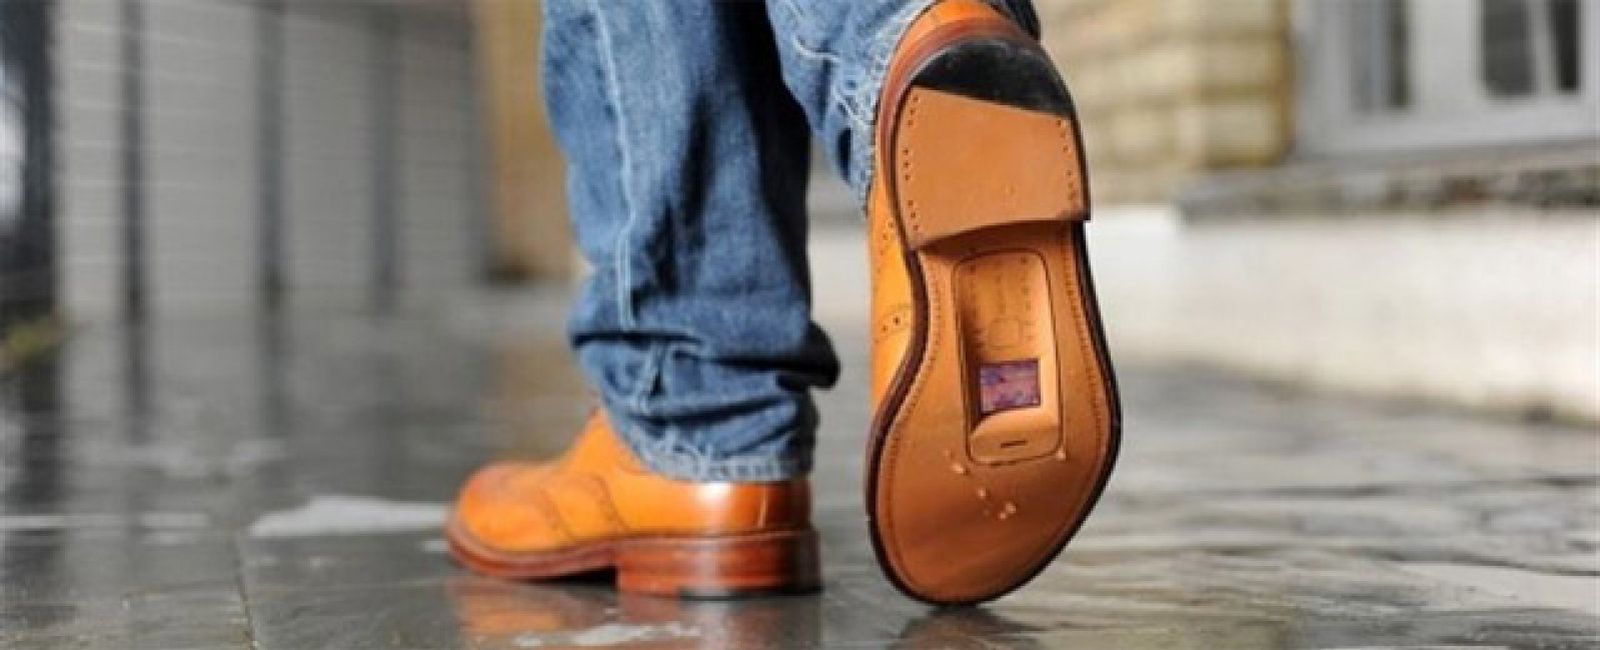 Foto: La británica O2 recicla calzado viejo para crear 'zapatófonos'